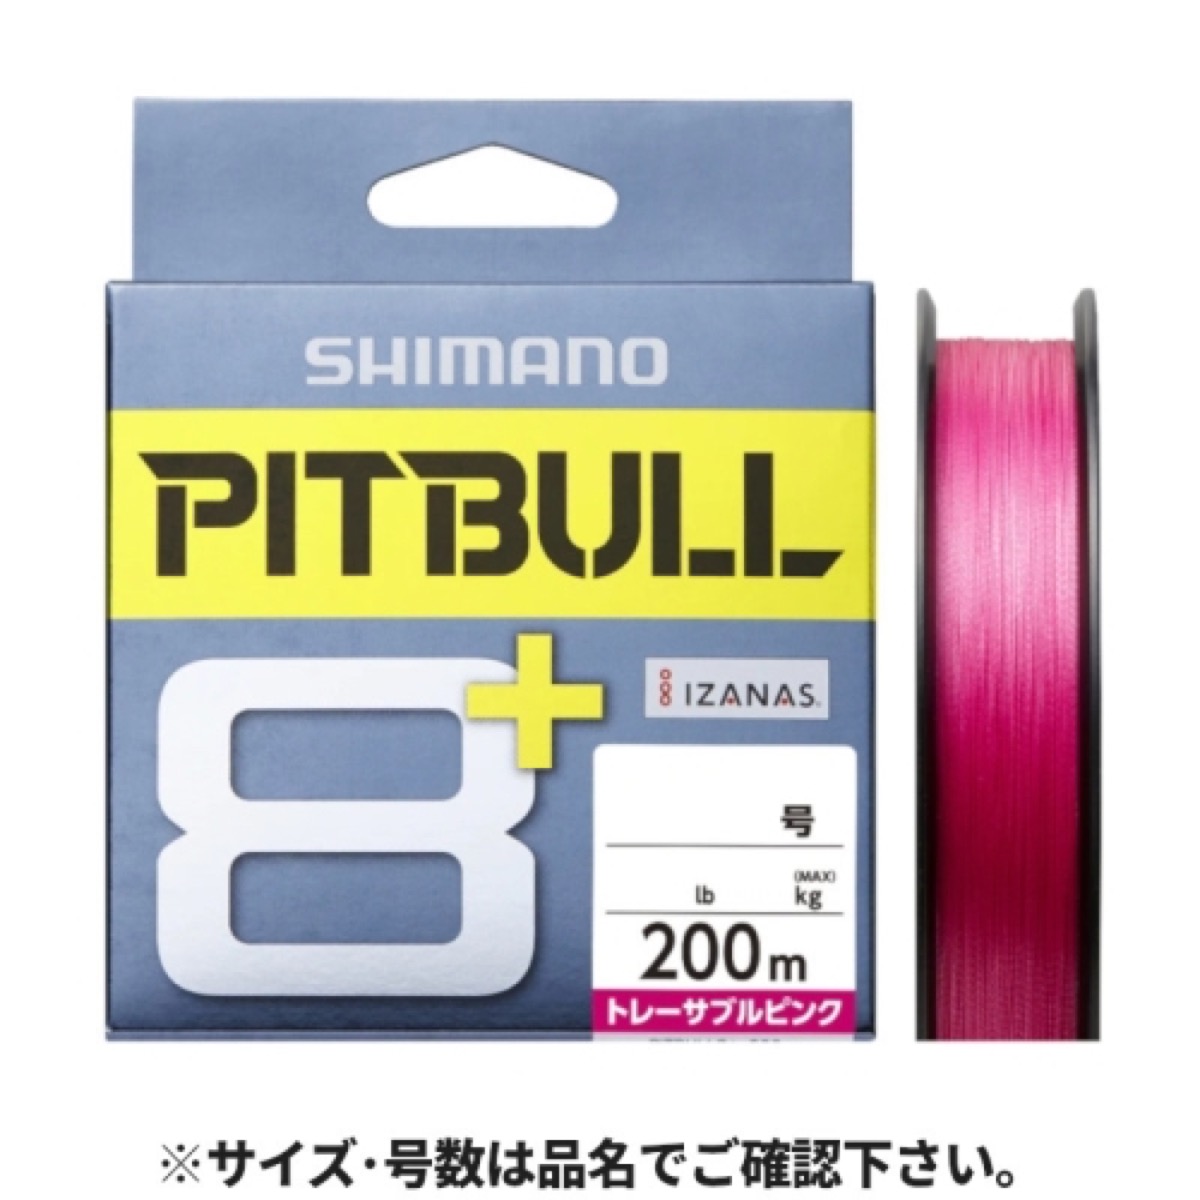 シマノ(SHIMANO) ピットブル8+ LD-M61T 200m 1.5号 トレーサブルピンク ネコポス(メール便)対象商品